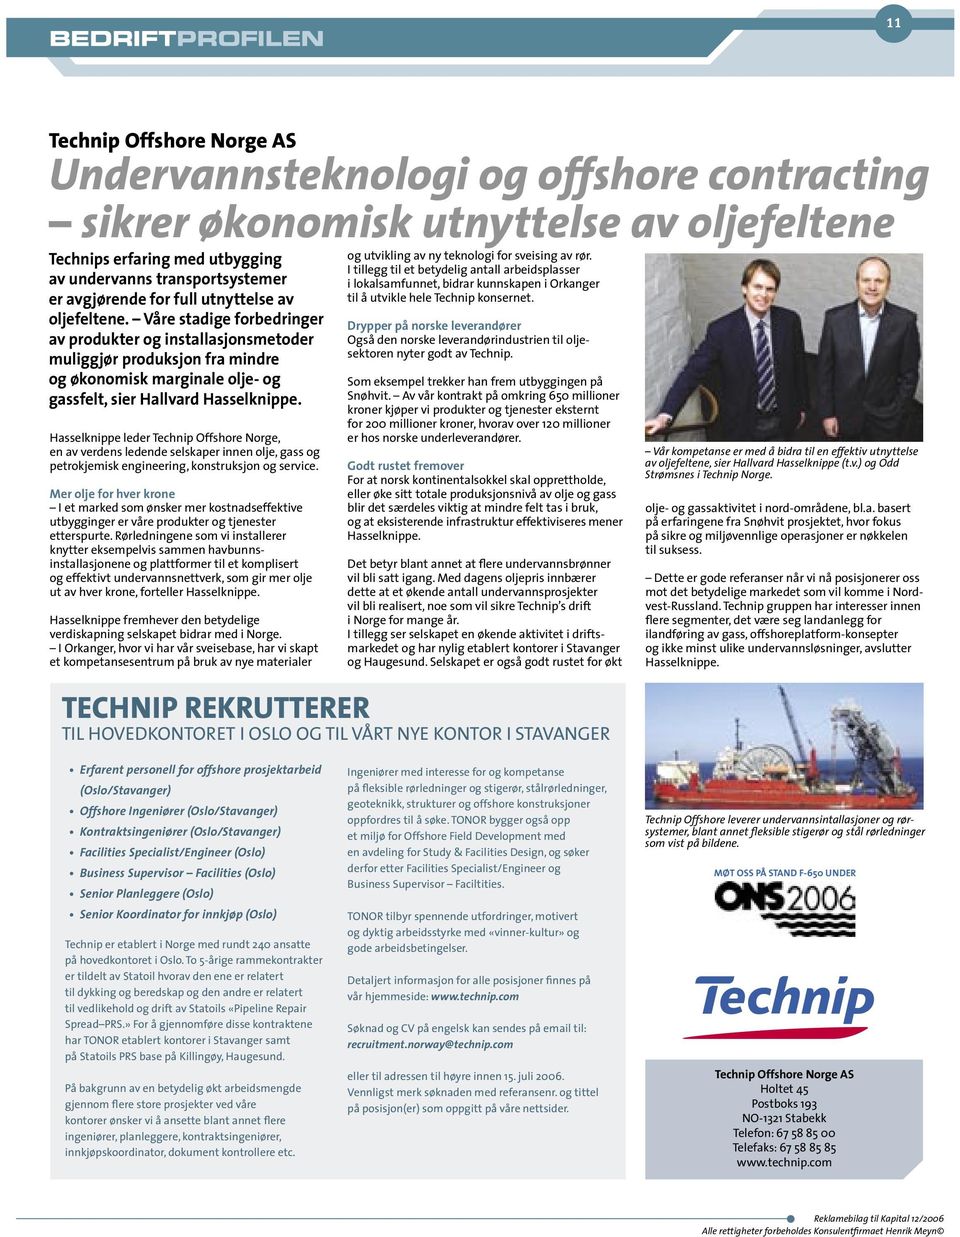 Hasselknippe leder Technip Offshore Norge, en av verdens ledende selskaper innen olje, gass og petrokjemisk engineering, konstruksjon og service.